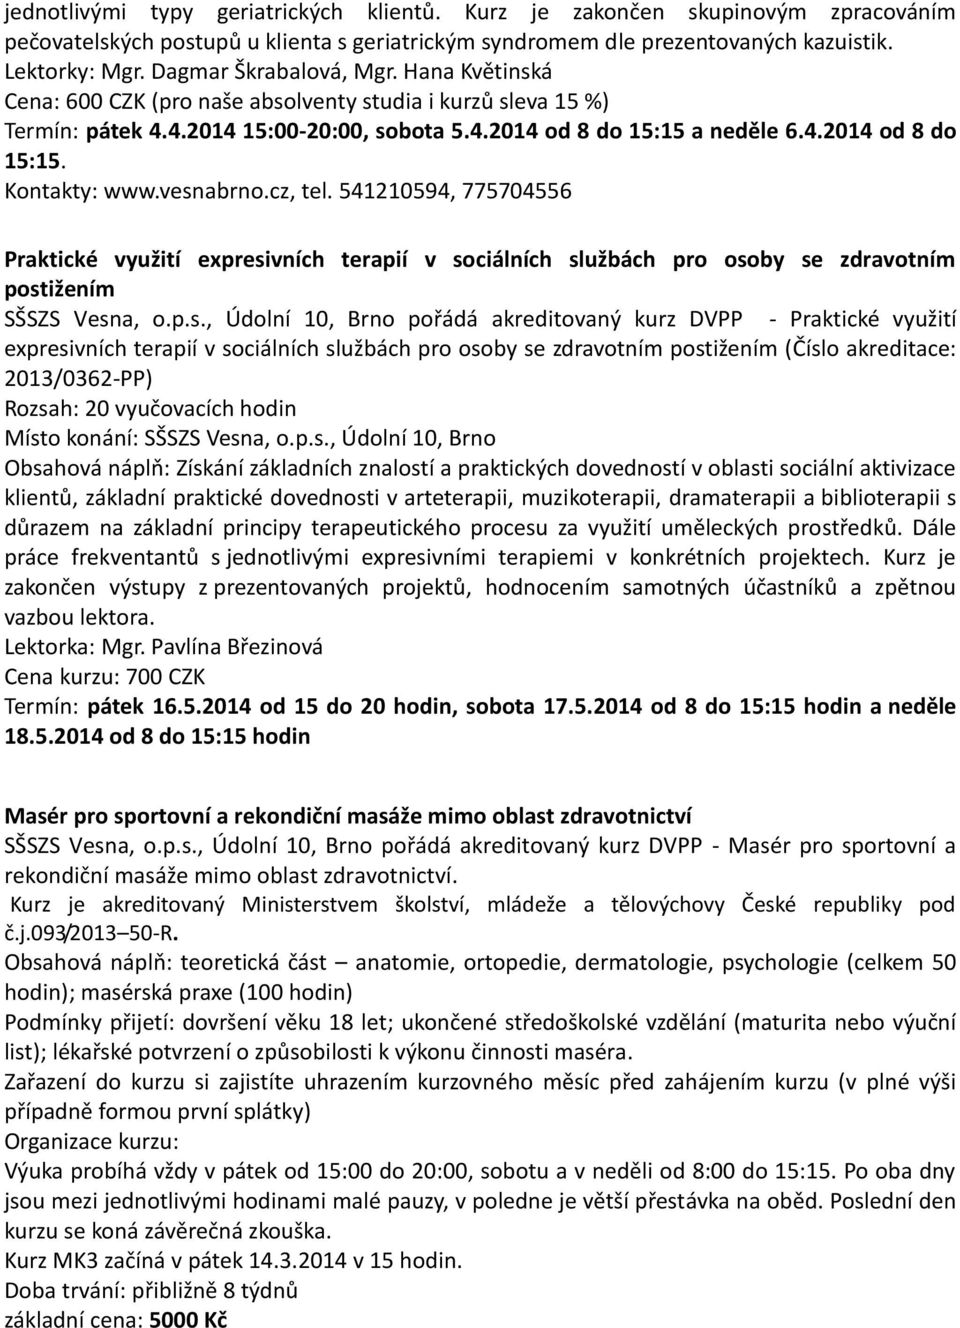 vesnabrno.cz, tel. 541210594, 775704556 Praktické využití expresivních terapií v sociálních službách pro osoby se zdravotním postižením SŠSZS Vesna, o.p.s., Údolní 10, Brno pořádá akreditovaný kurz